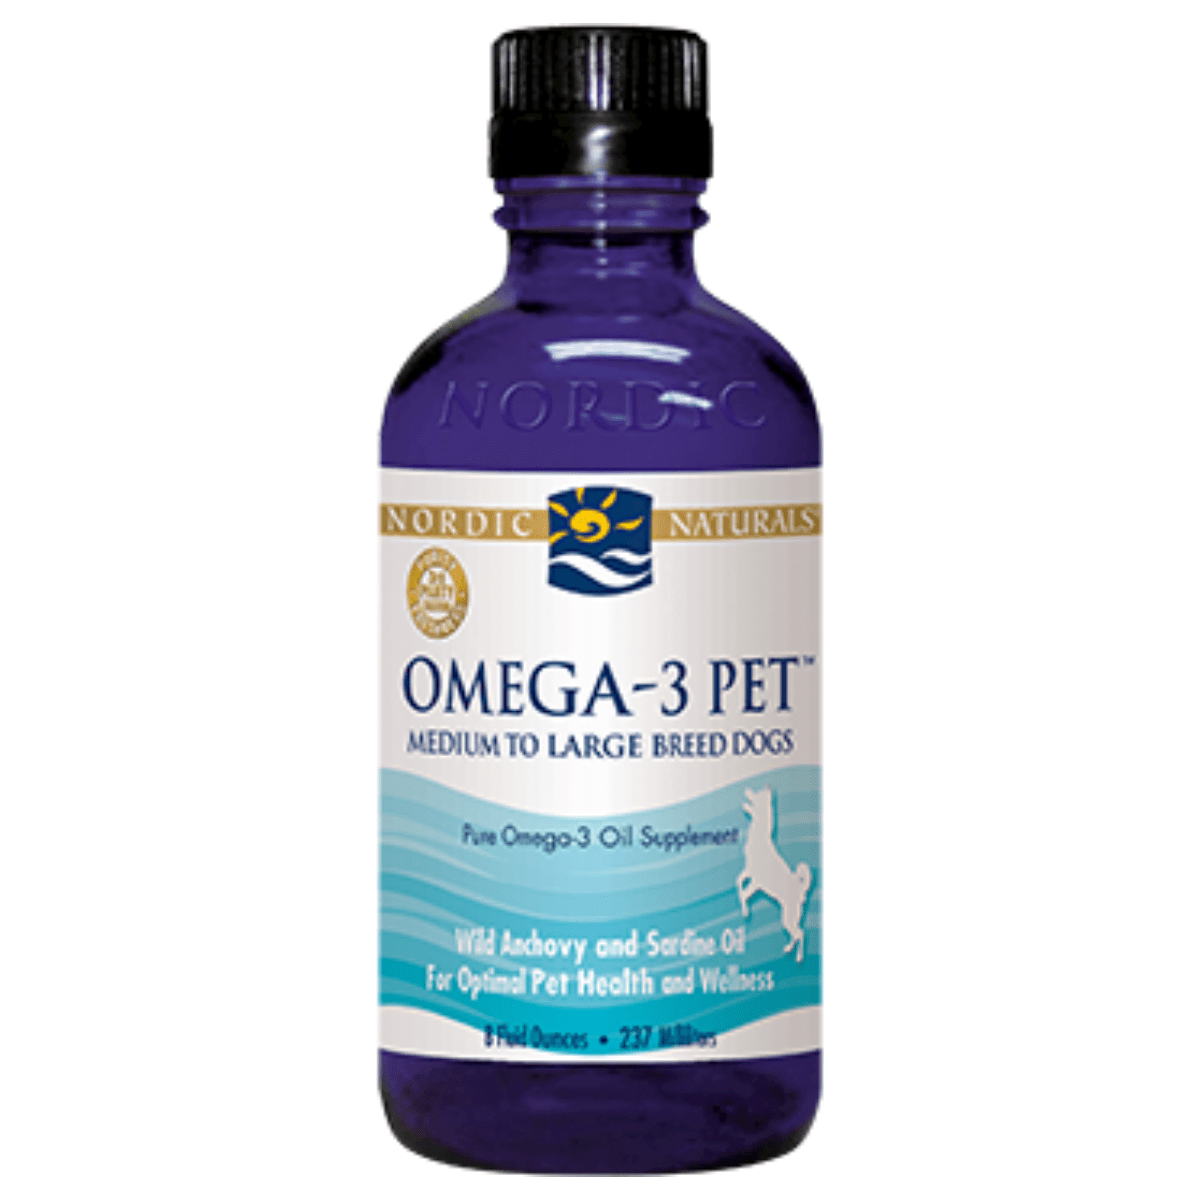 Omega-3 Pet Med/Lrge Dogs (8 fl oz)